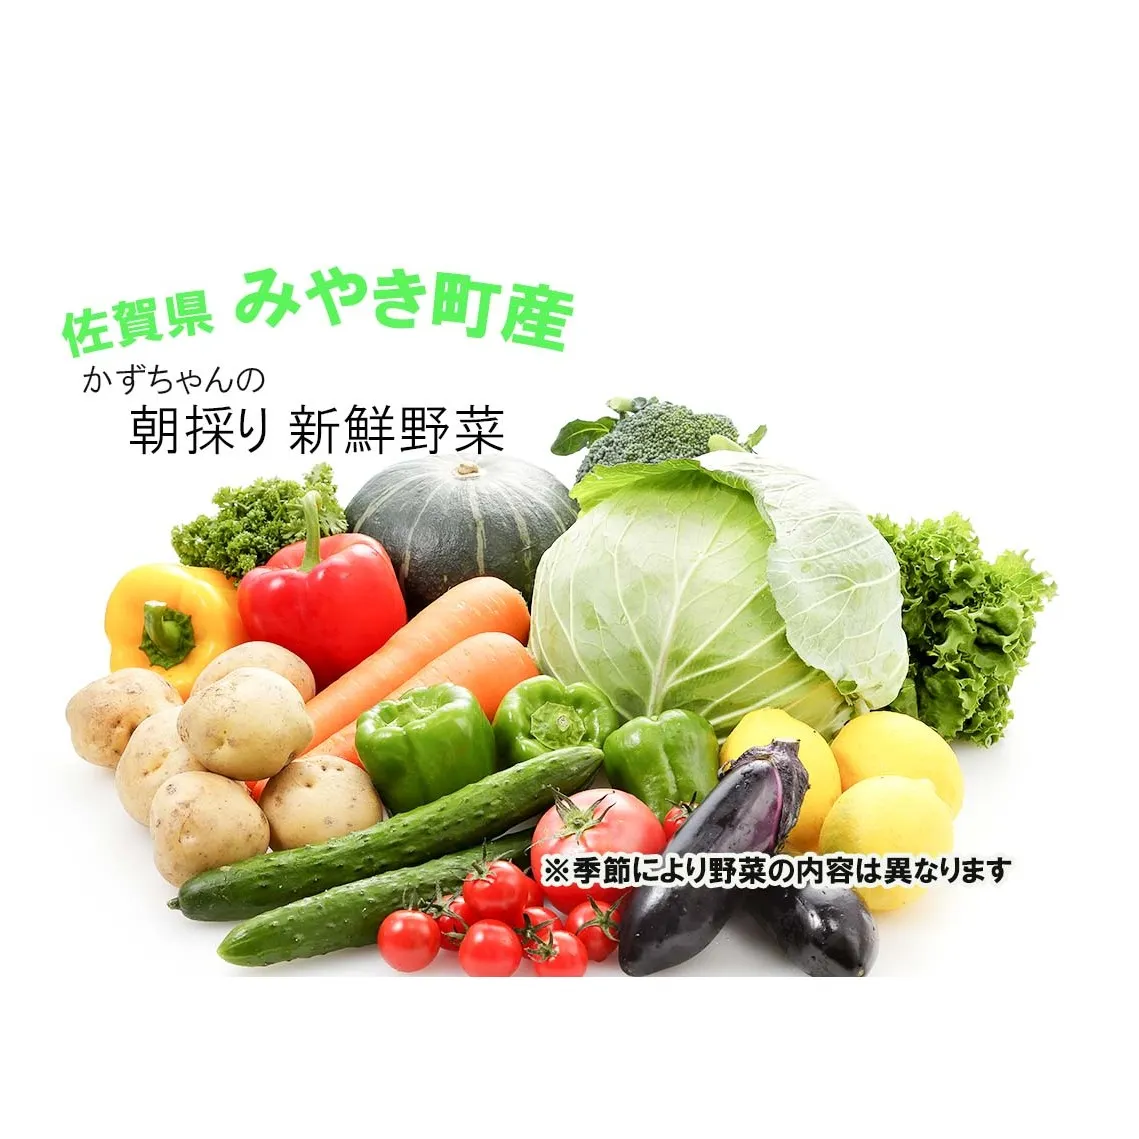 CC001_かずちゃんの朝採り新鮮野菜セット【みやき町産朝採り野菜をお届け】